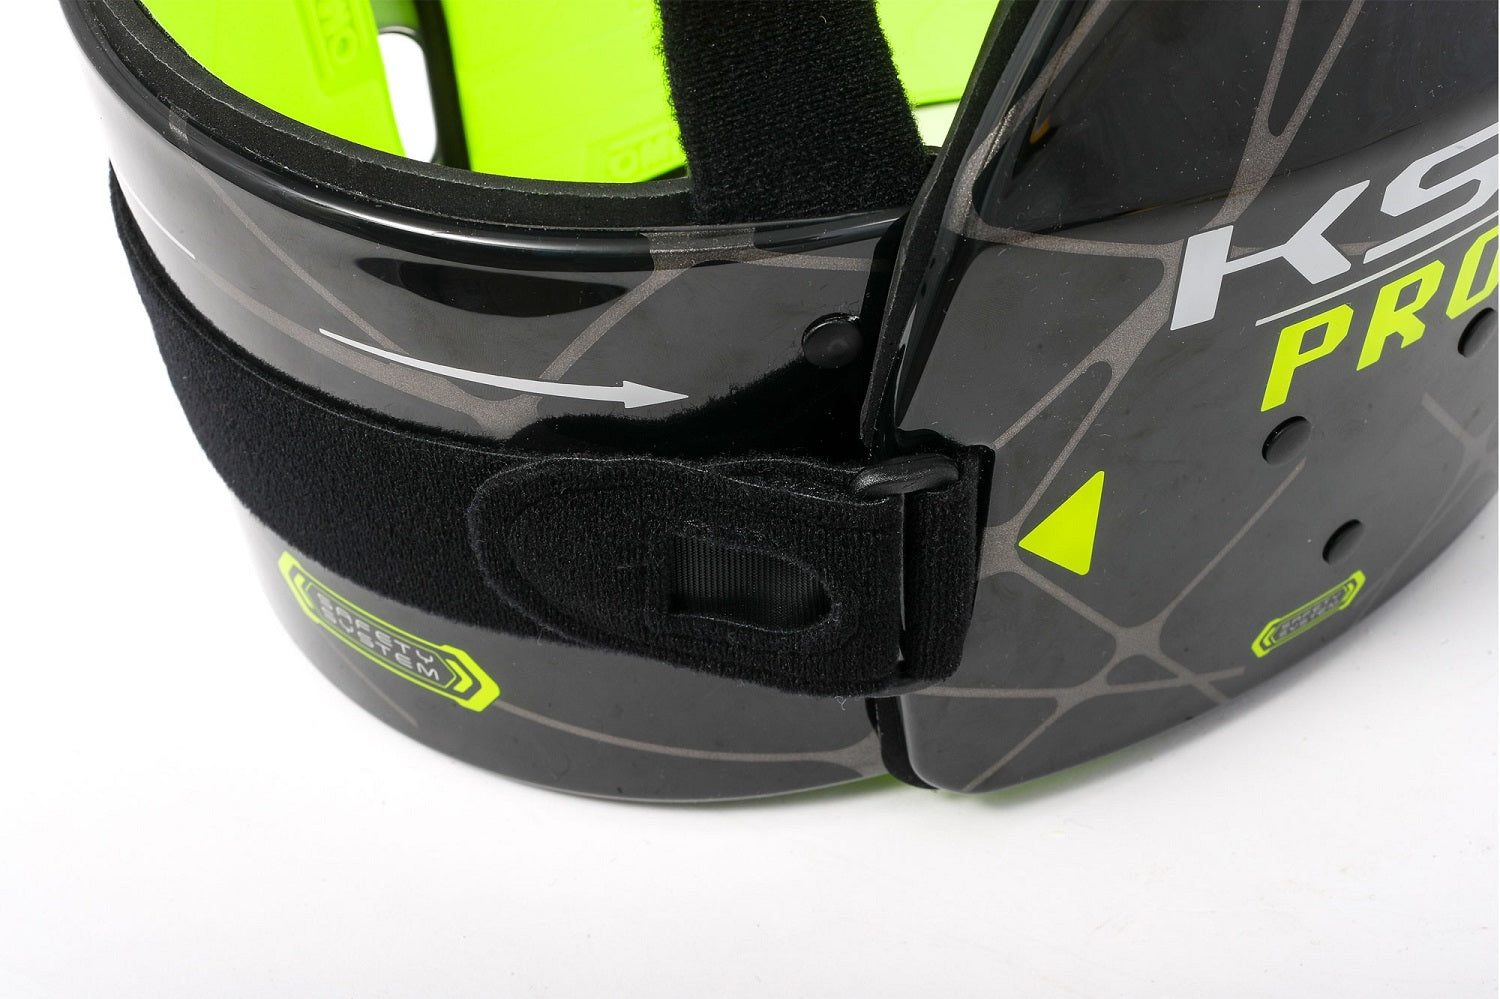 OMP KK0-0049-B01-178-S (KK049E178S) KS-1 PRO Karting Body Protection, FIA 8870-2018, black/yellow, size S Photo-1 